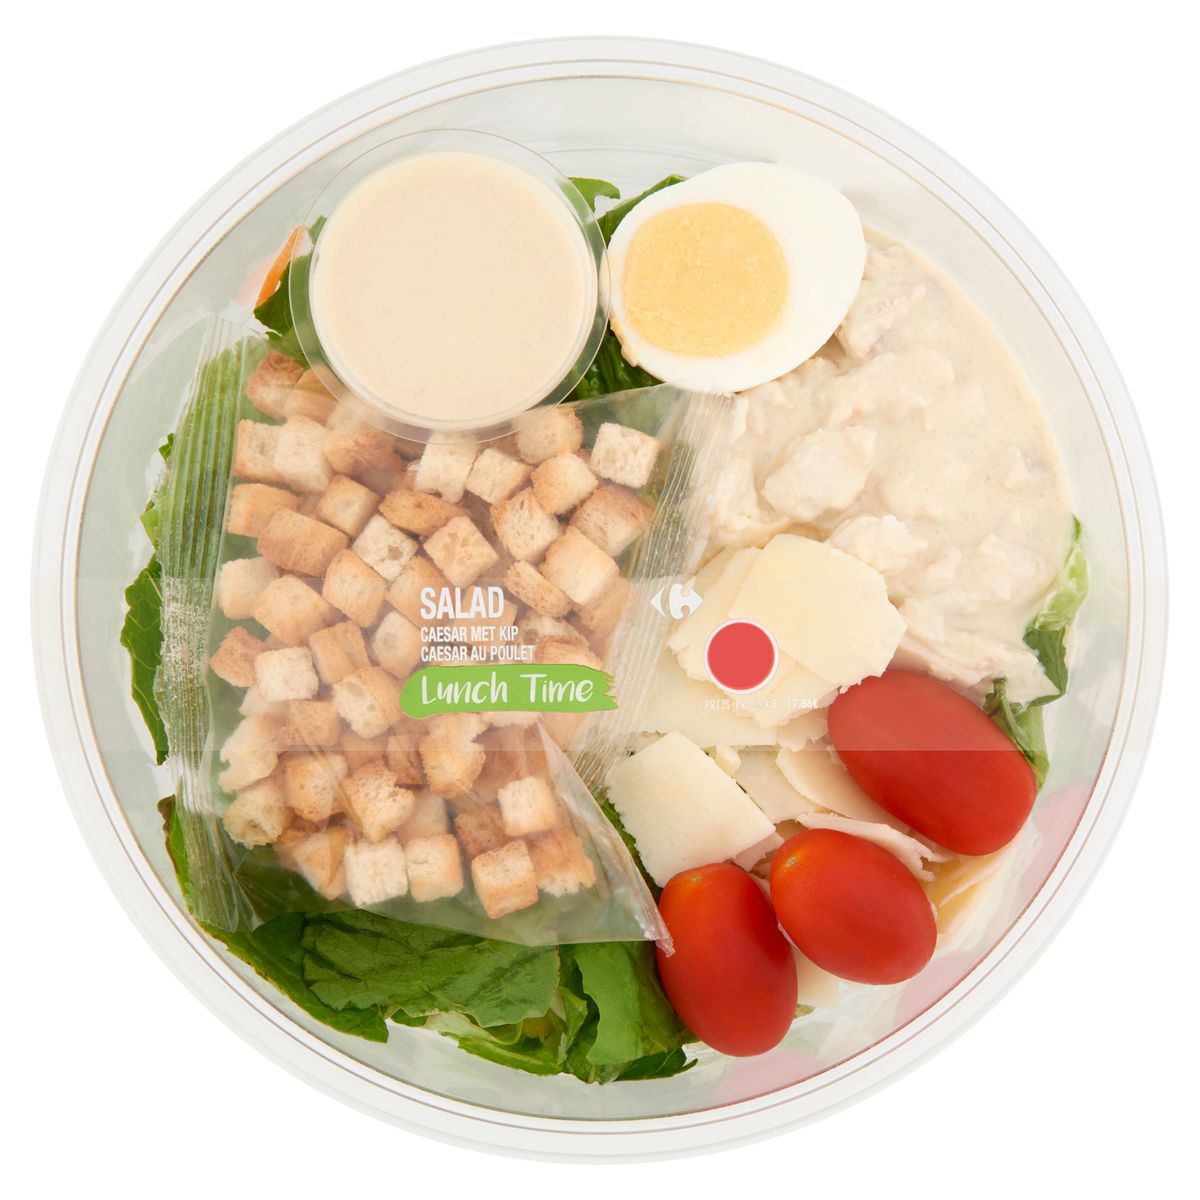 Carrefour Lunch Time Salad Caesar au Poulet 270 g